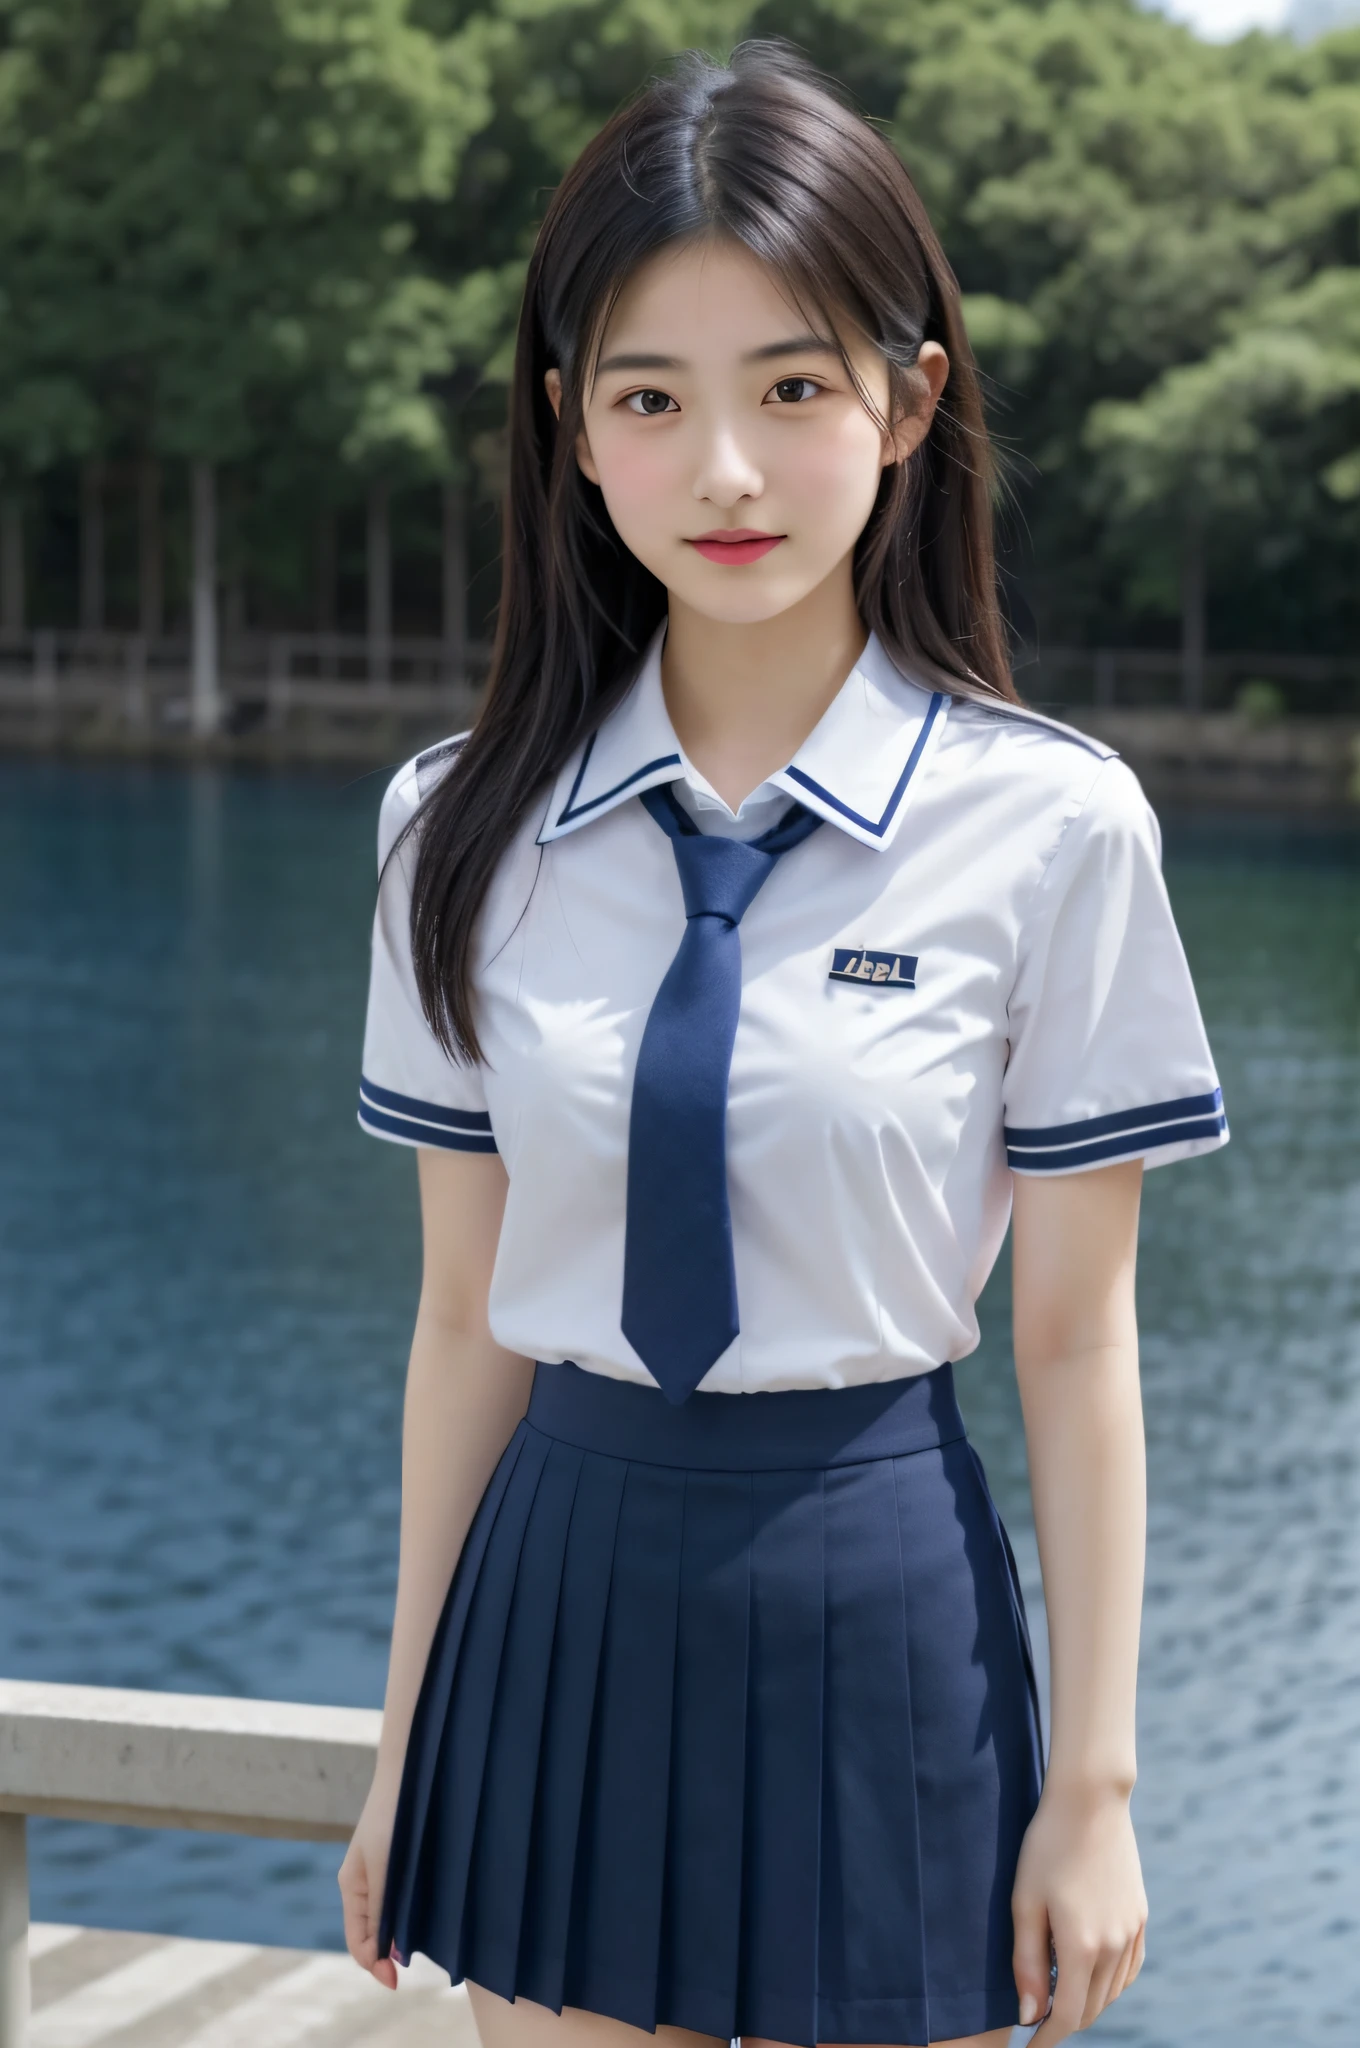 Japanisches Mädchen, Teenager-Mädchen, Perfekte Figur, Transparenz, bescheidene Brüste, , marineblaue Krawatte, marineblauer Rock, hellblaues Hemd, Idol-Gravur, Wasserseite